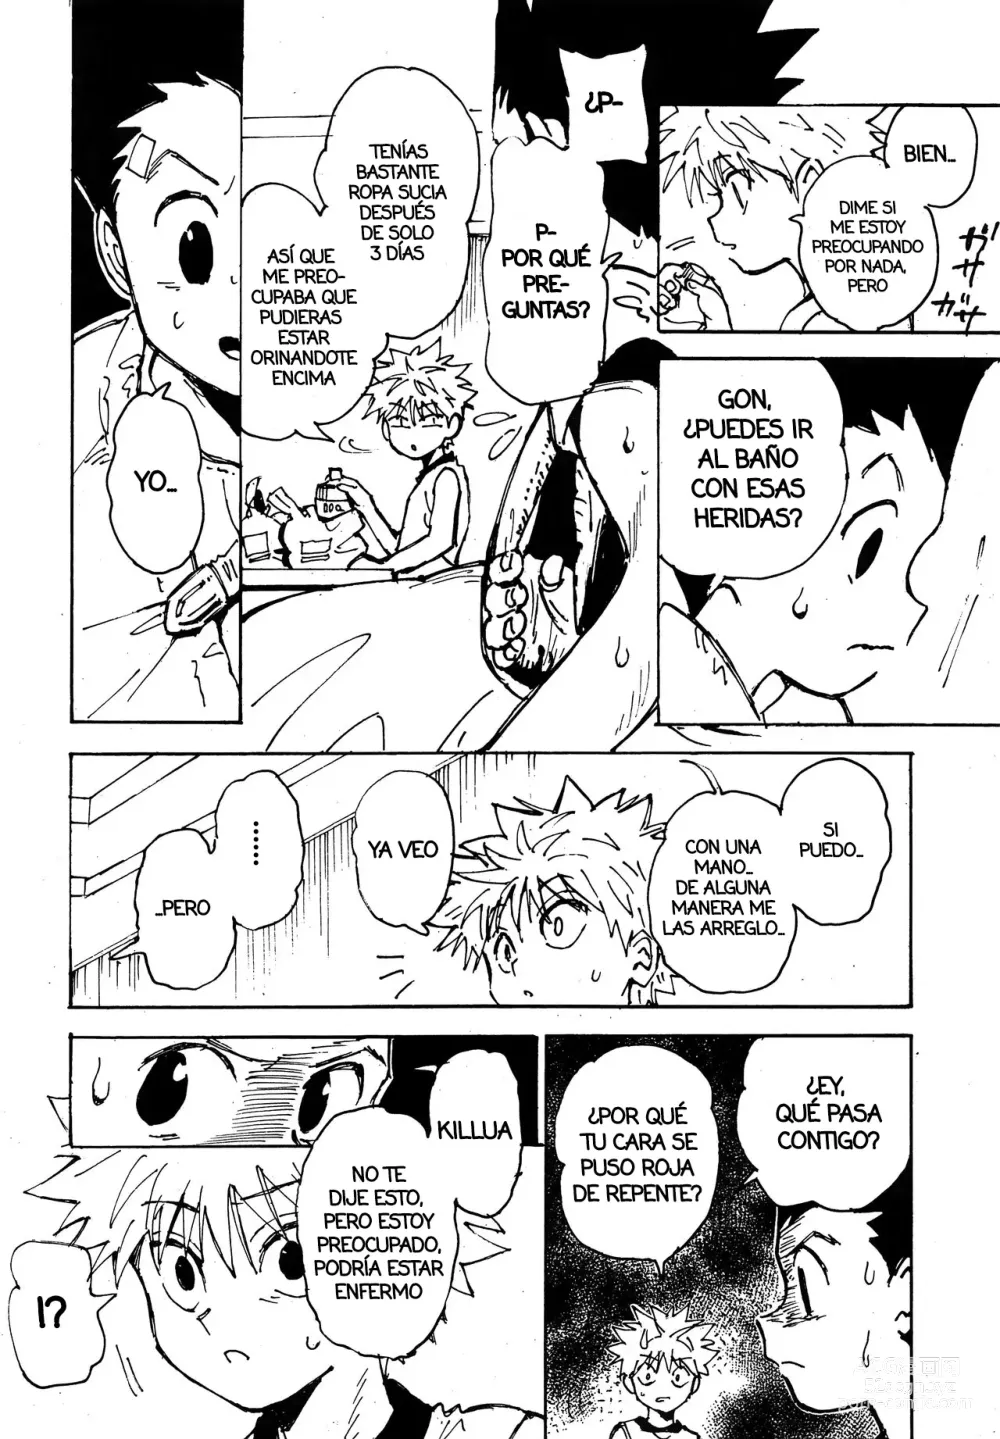 Page 5 of doujinshi Imprudencia Juvenil